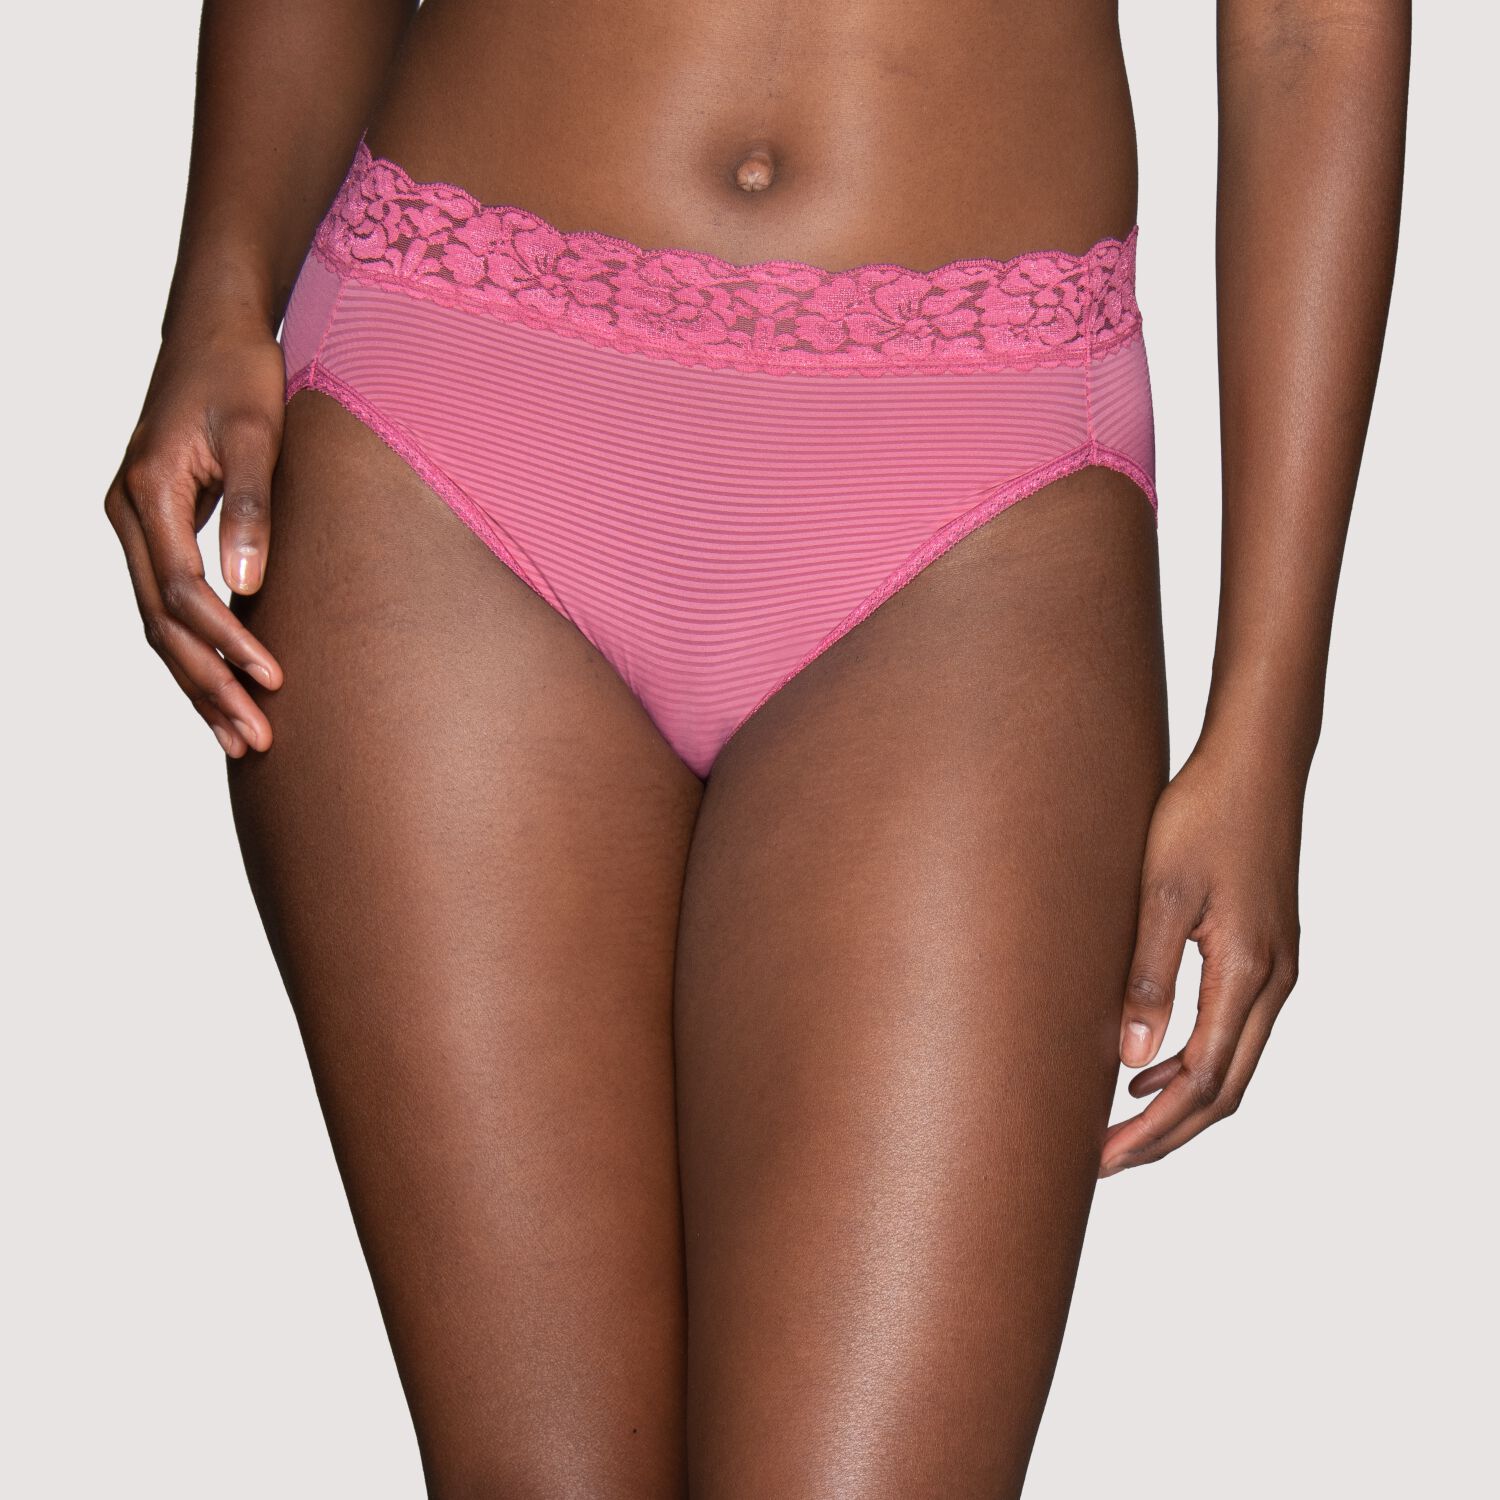 Happy Birthday pink women spandex briefs underwear